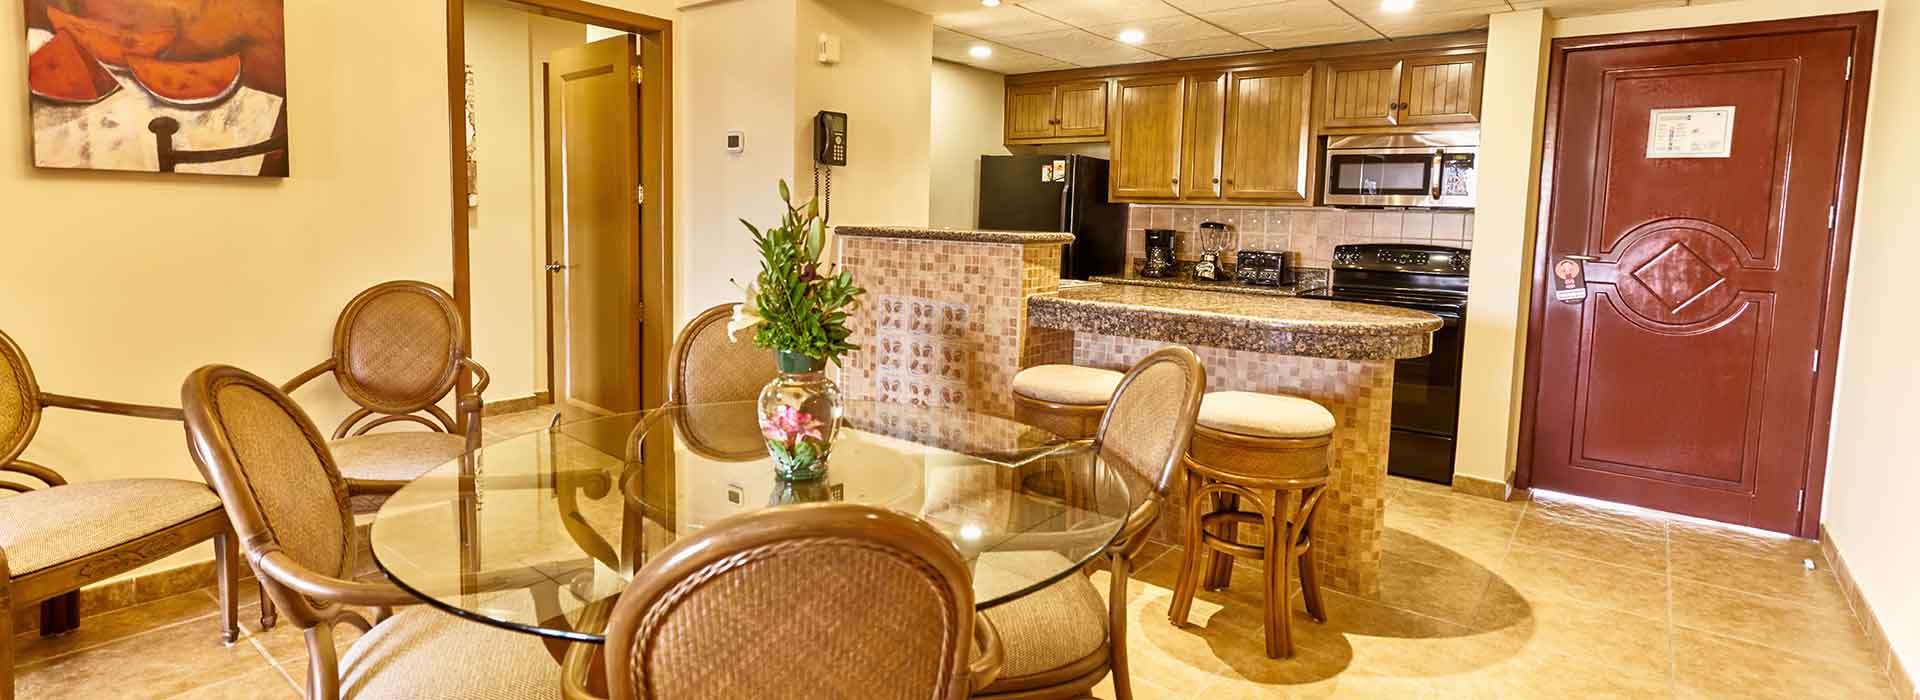 The Royal Haciendas suite con cocina completa